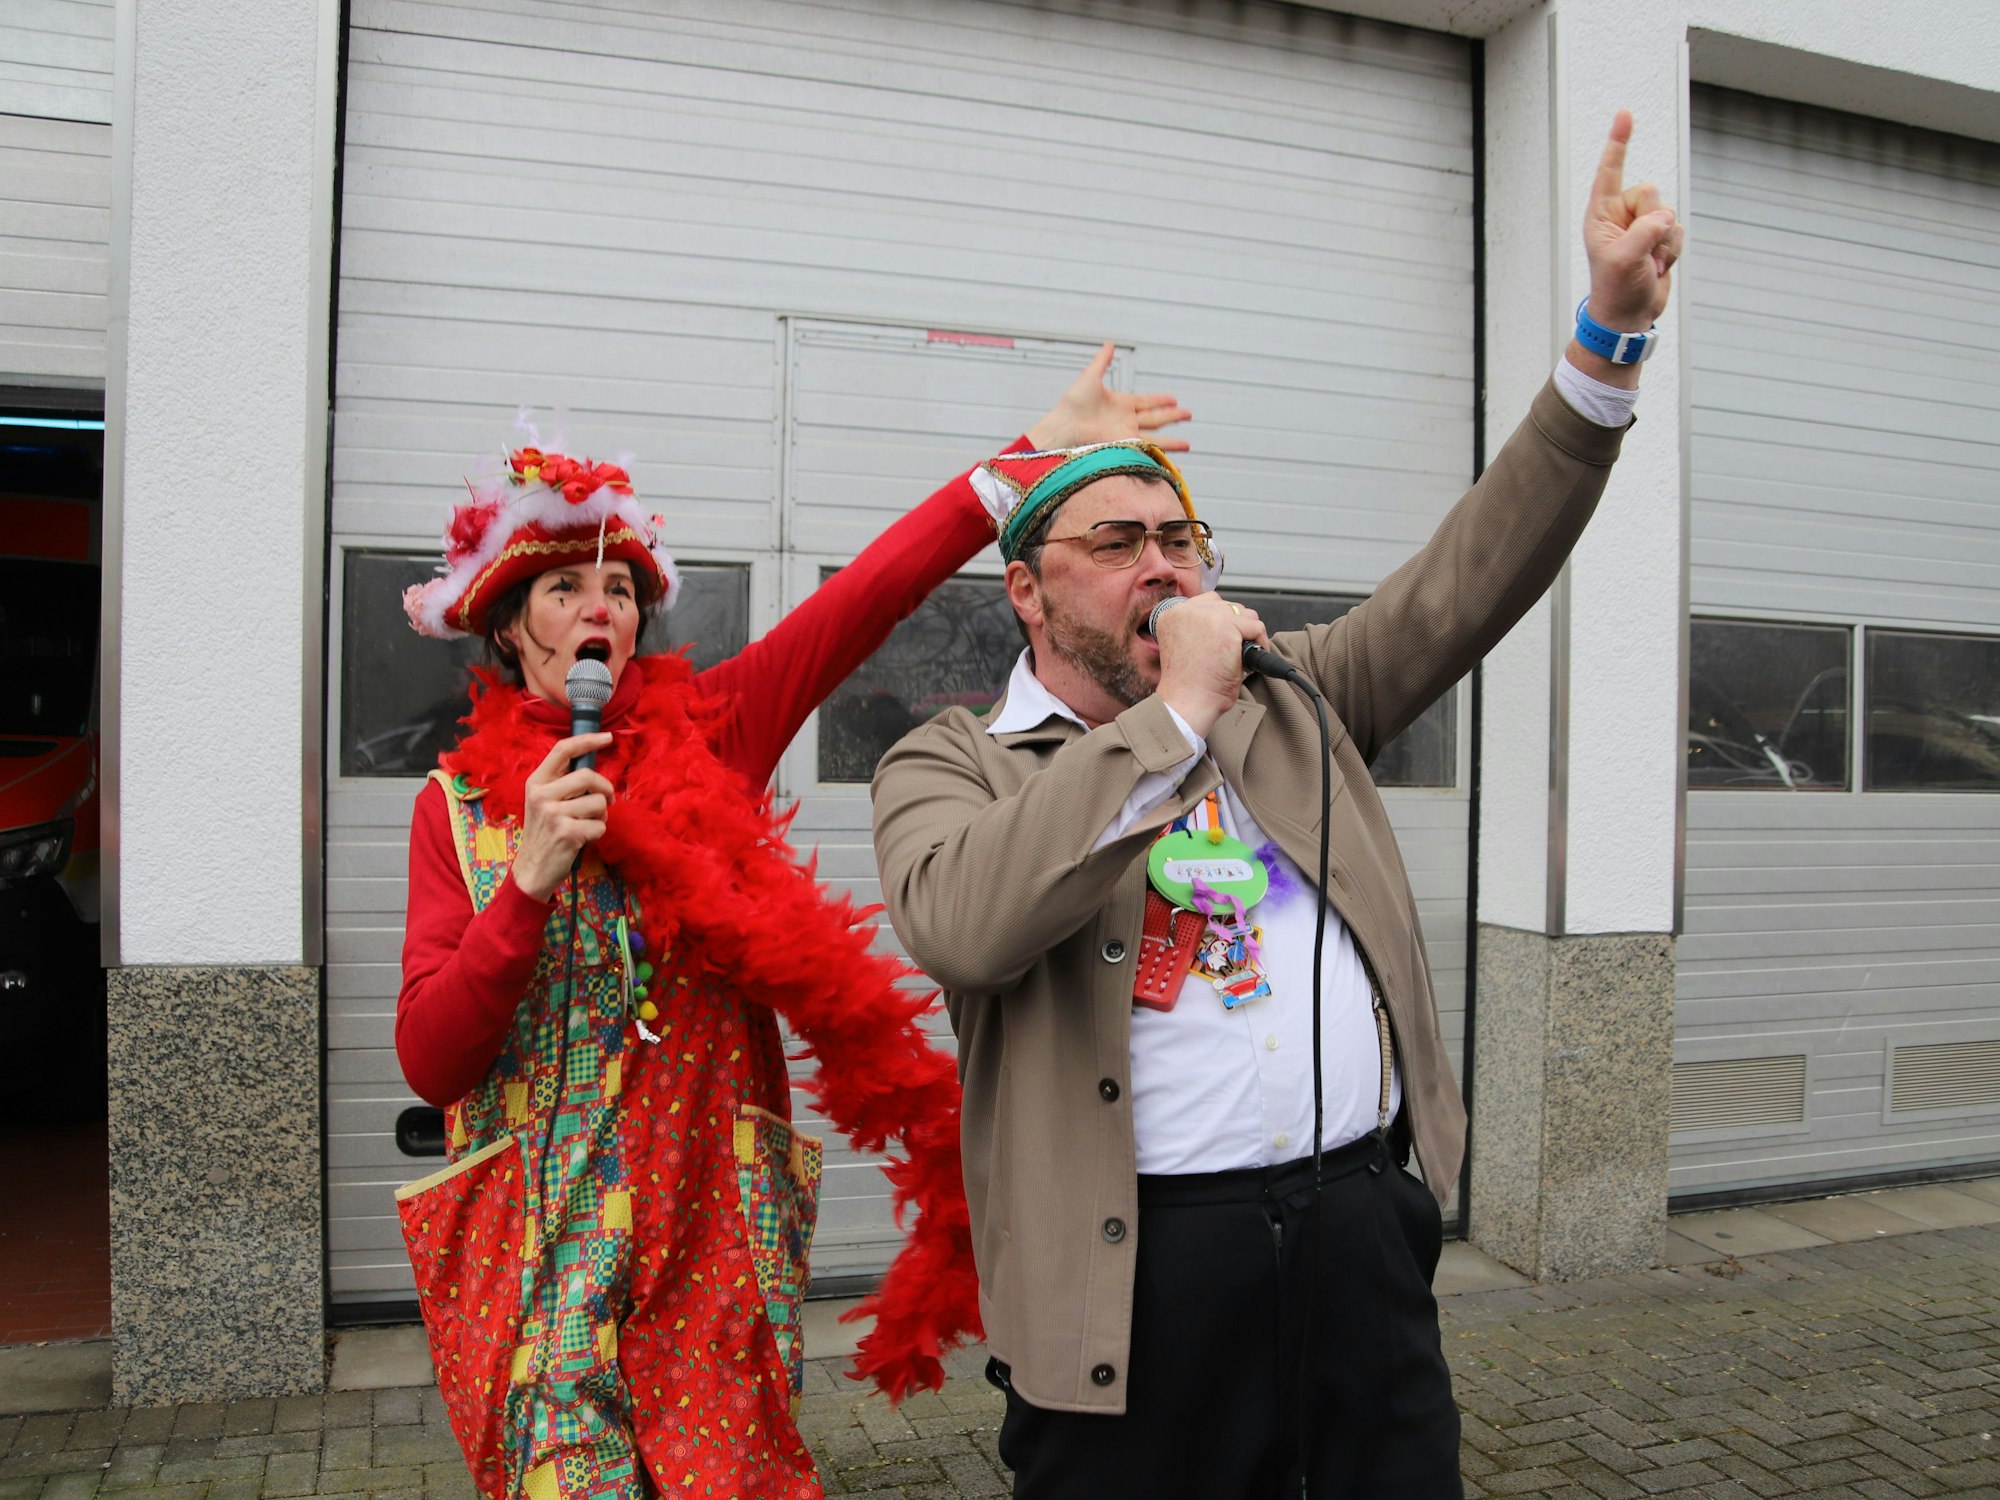 Eine Frau in Clownshose mit Hut und Federboa und ein Mann mit grauer Jacke und Narrenkappe singen in Mikrofone, sie haben den rechten Arm in die Luft gestreckt.